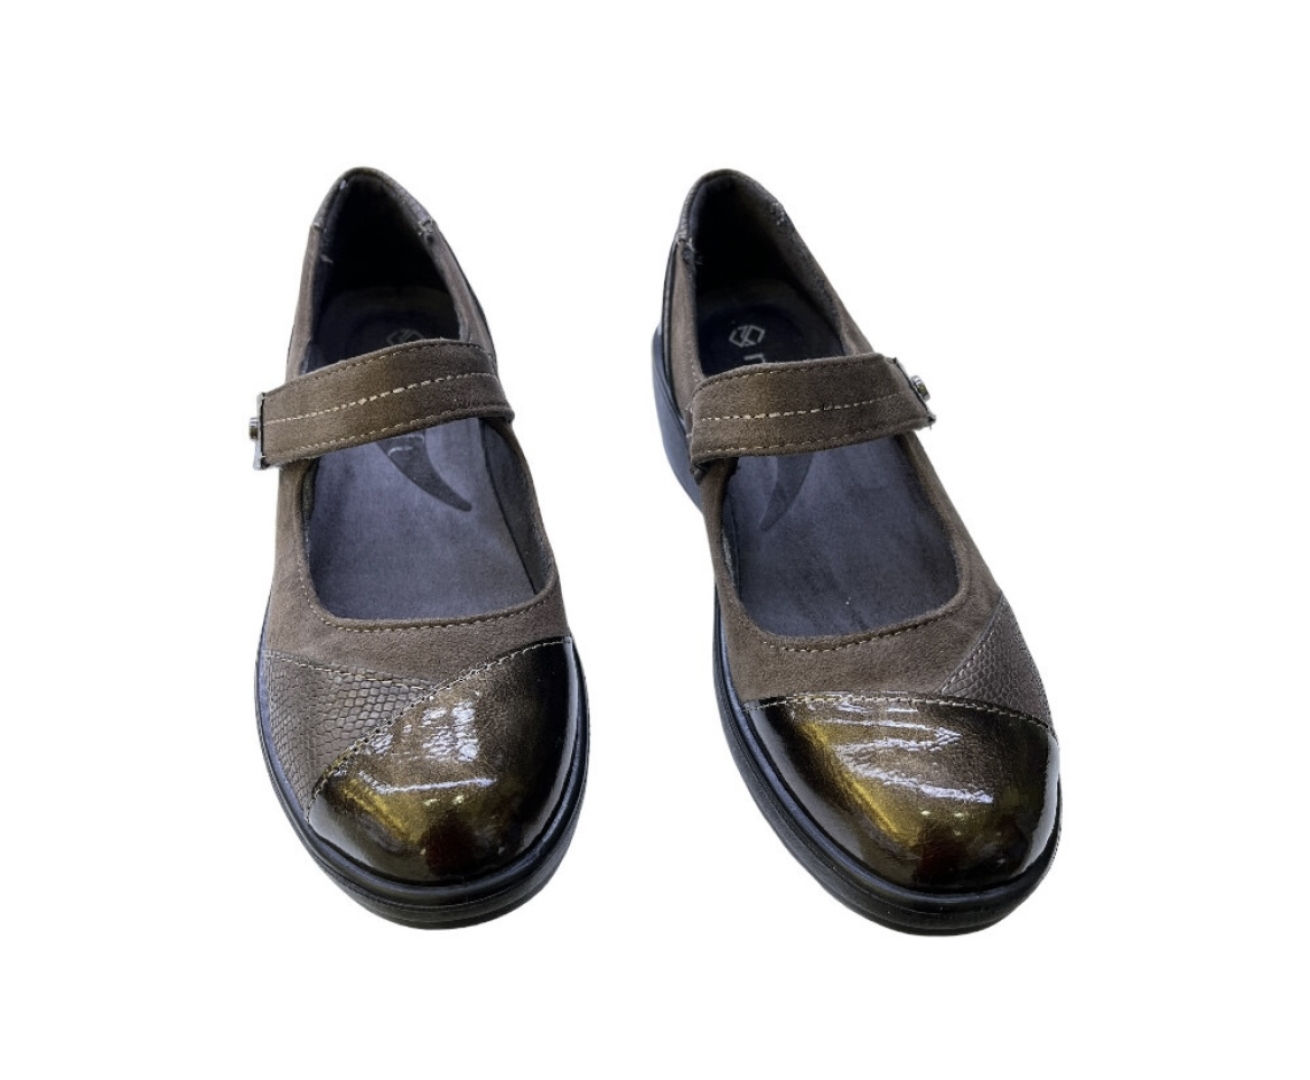 Zapato merceditas en marrón de Mysoft 23M527. M-155